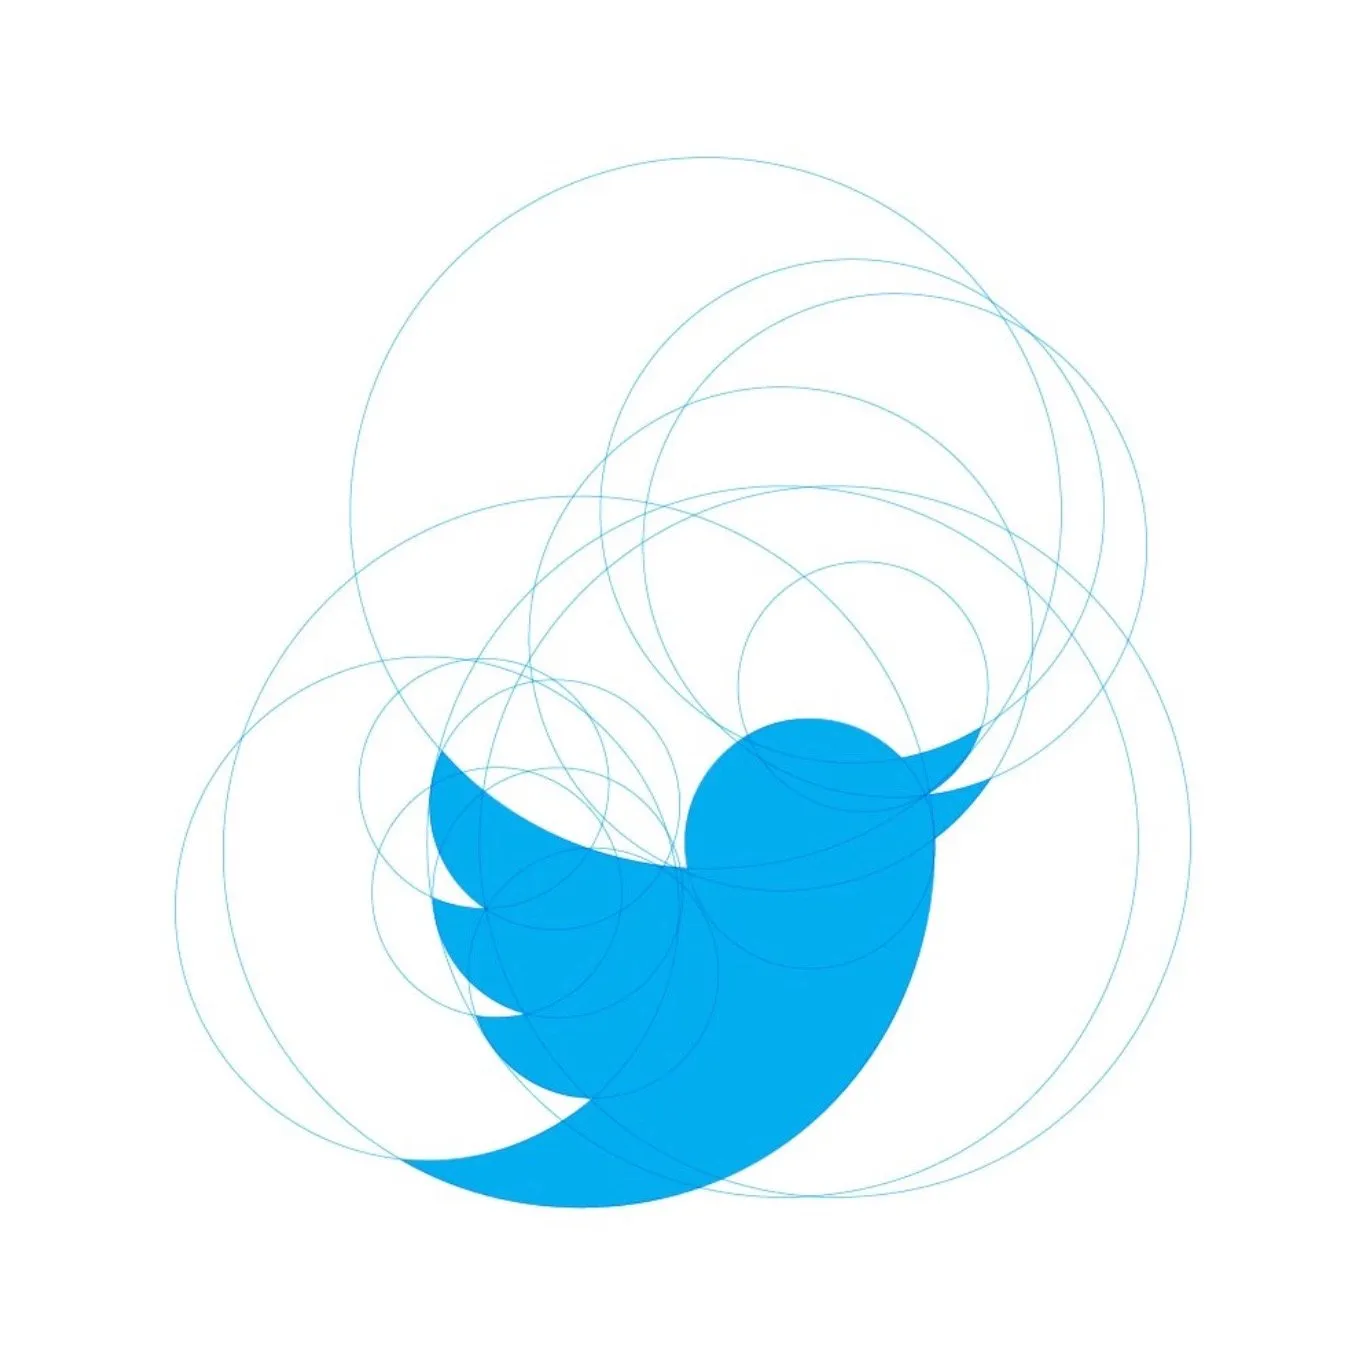 Maqueta del logotipo de Twitter.